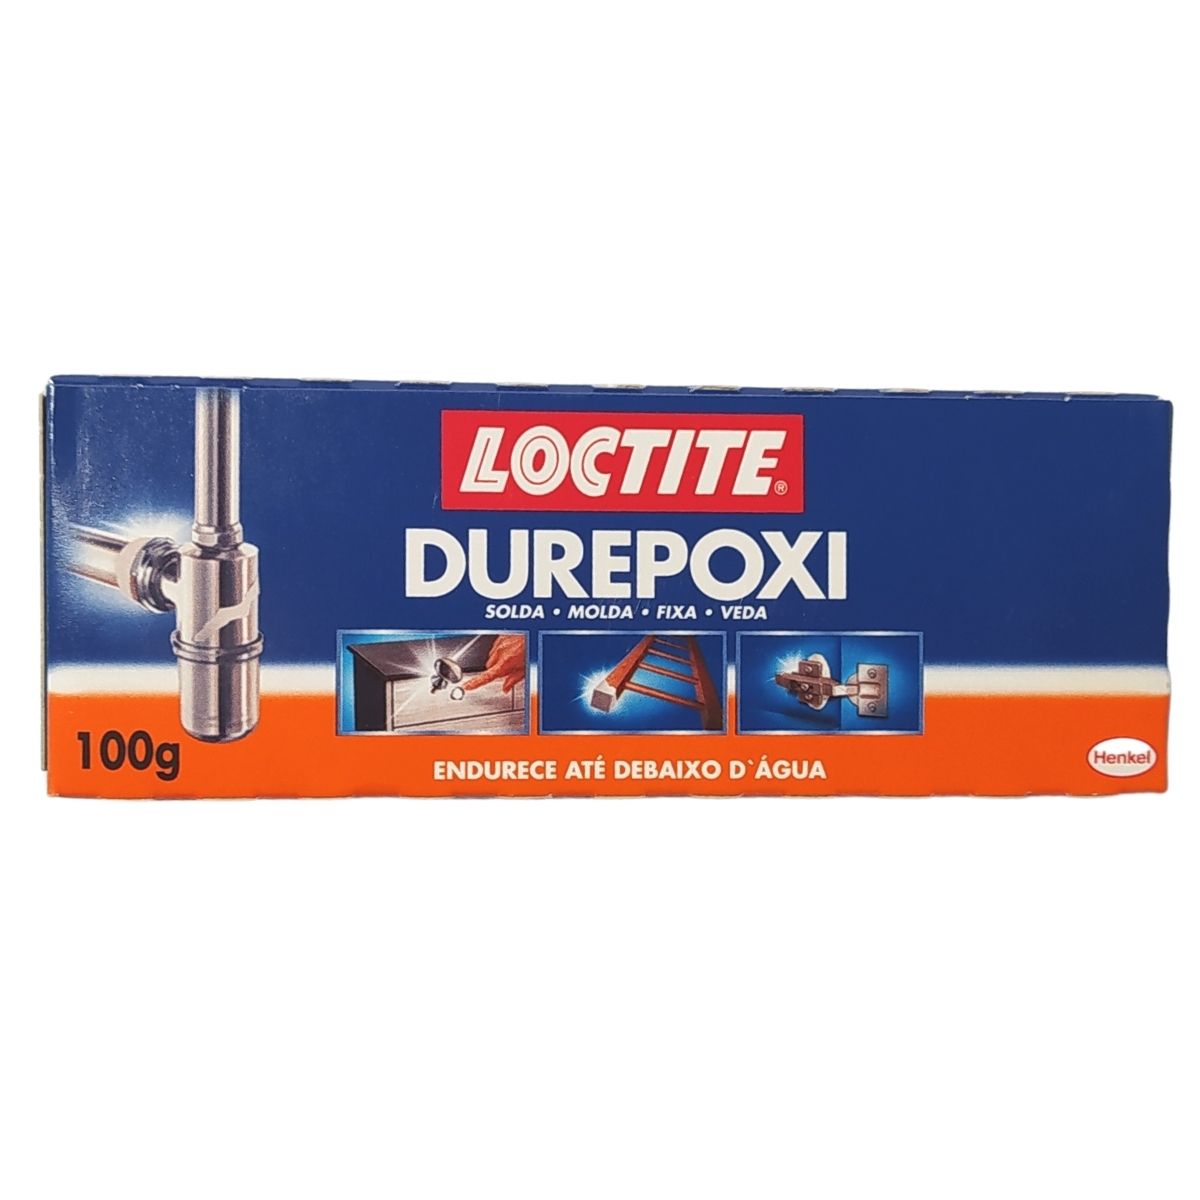 DUREPOXI LOCTITE 100G